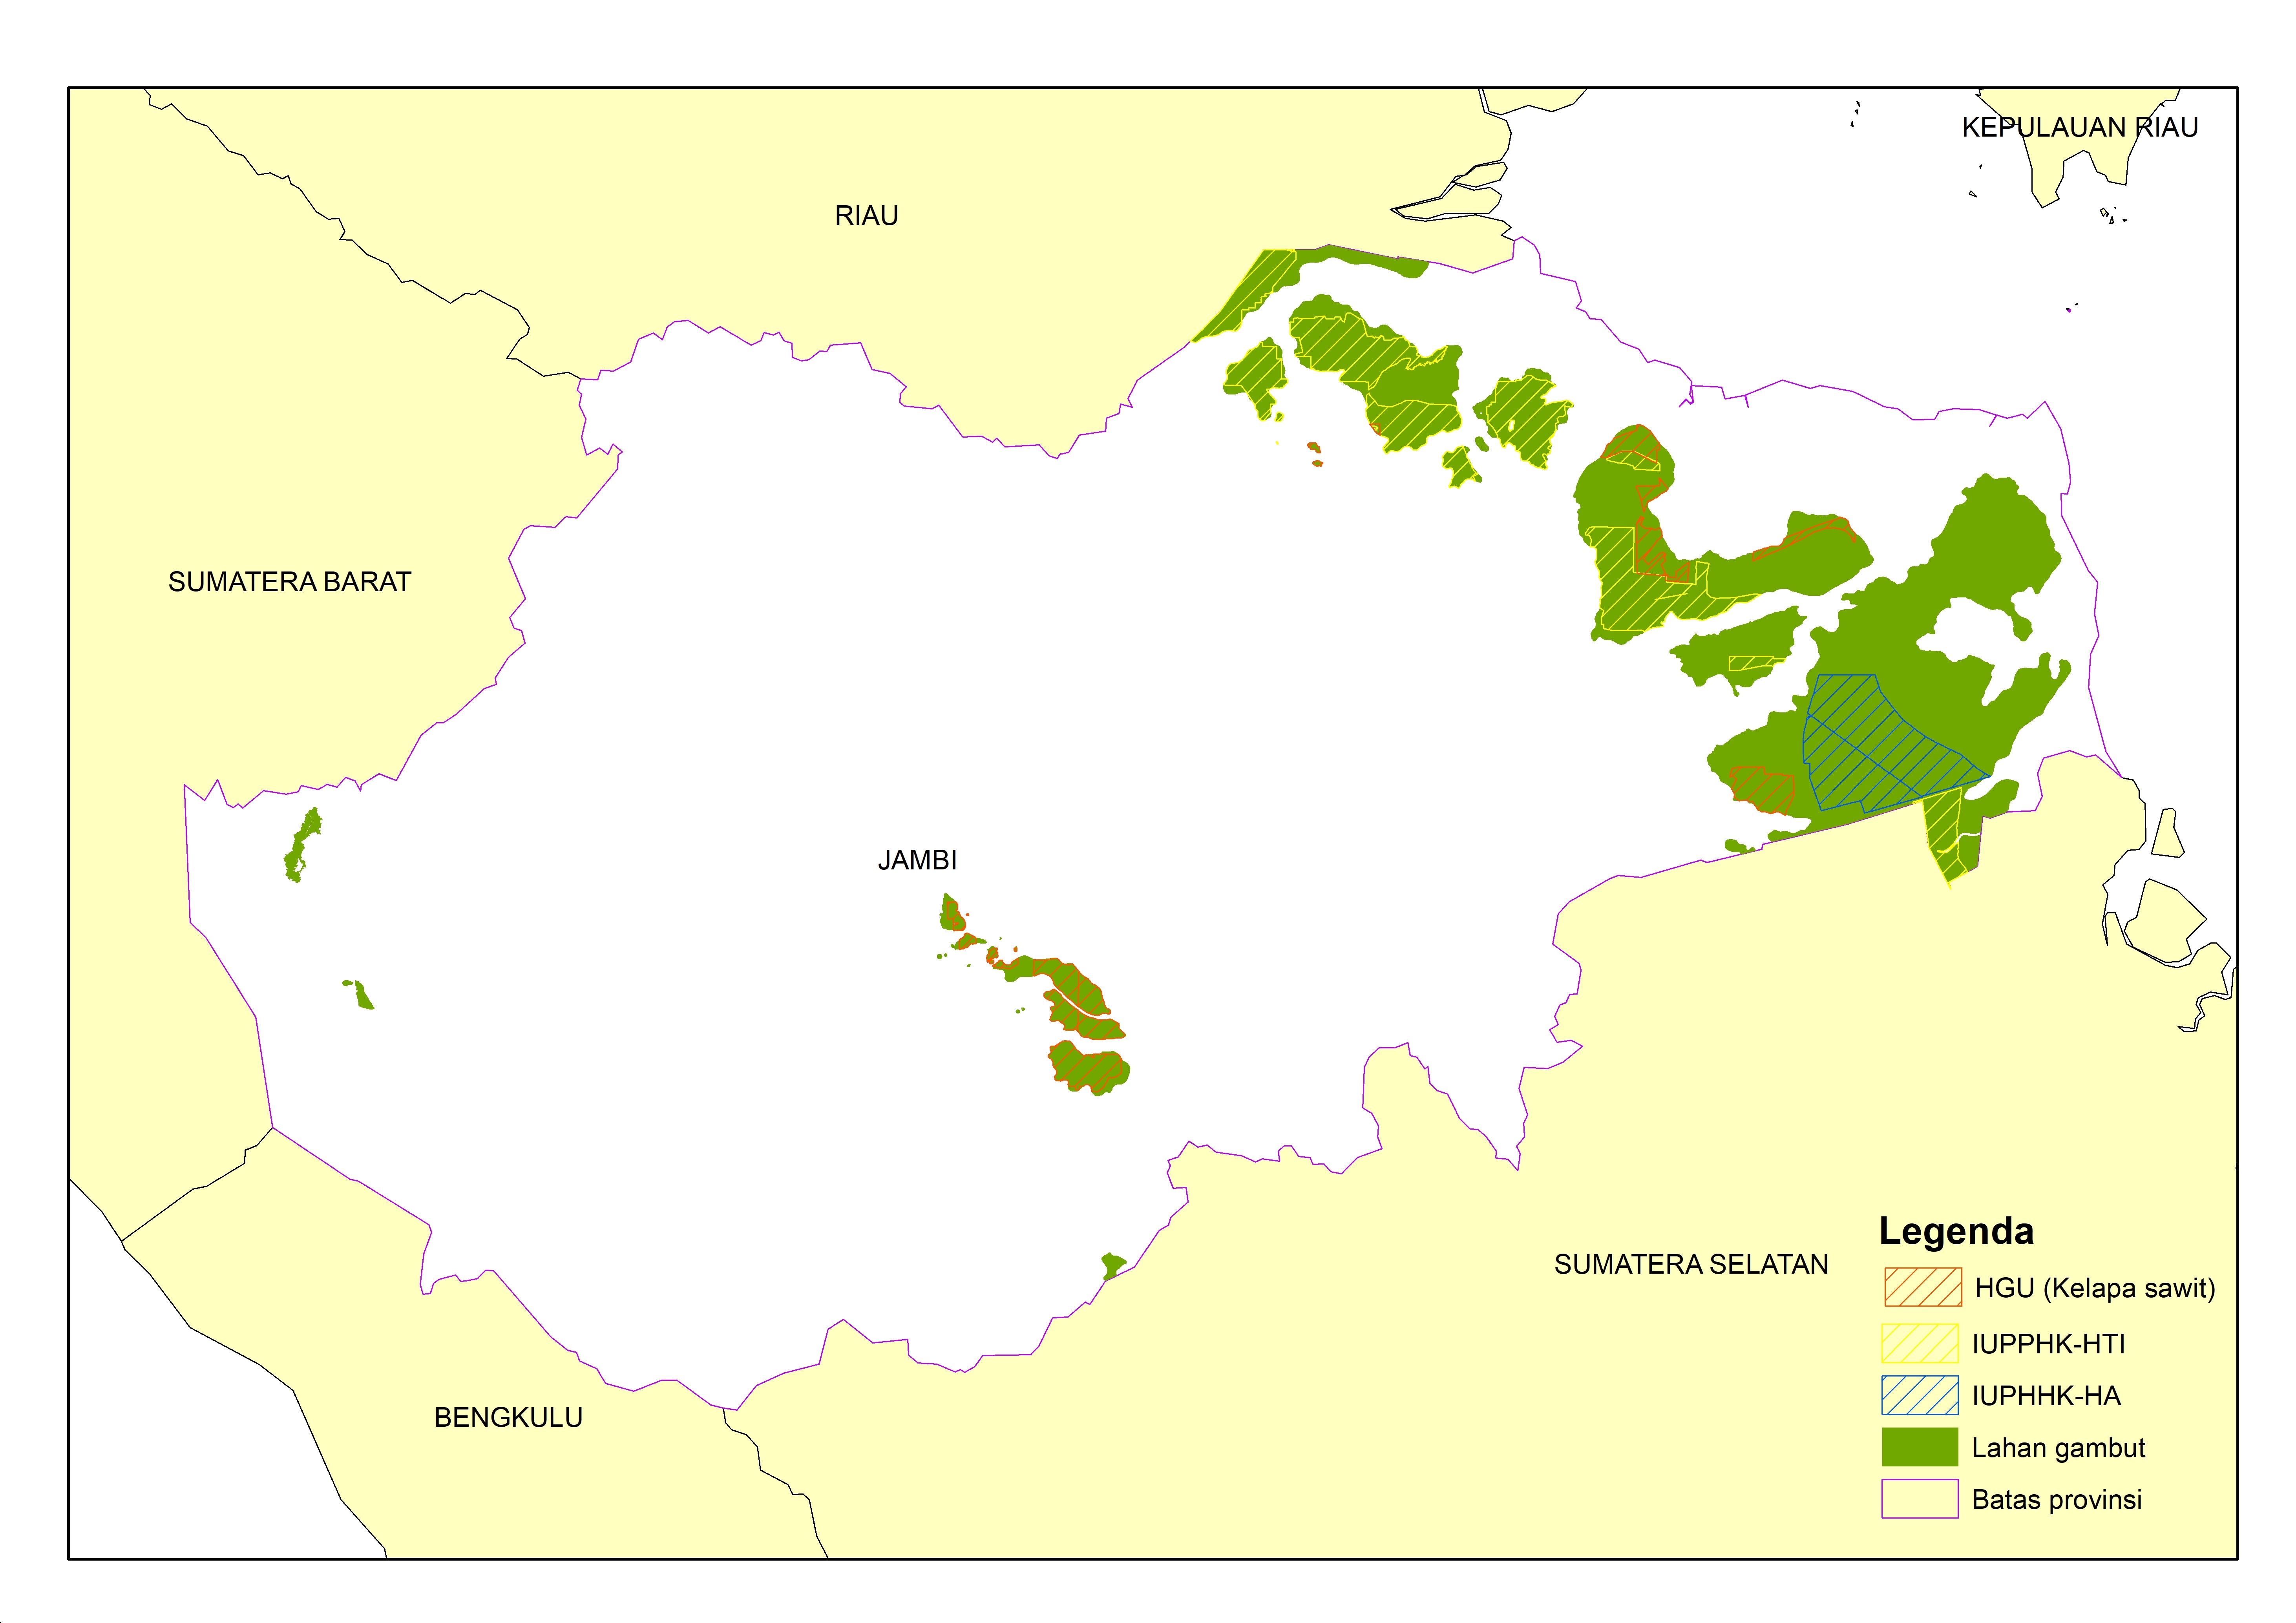 Peta izin konsesi area gambut di Jambi. Adapun 70 persen dari keseluruhan lahan gambut di Jambi terdapat izin konsesi ©Pantau Gambut